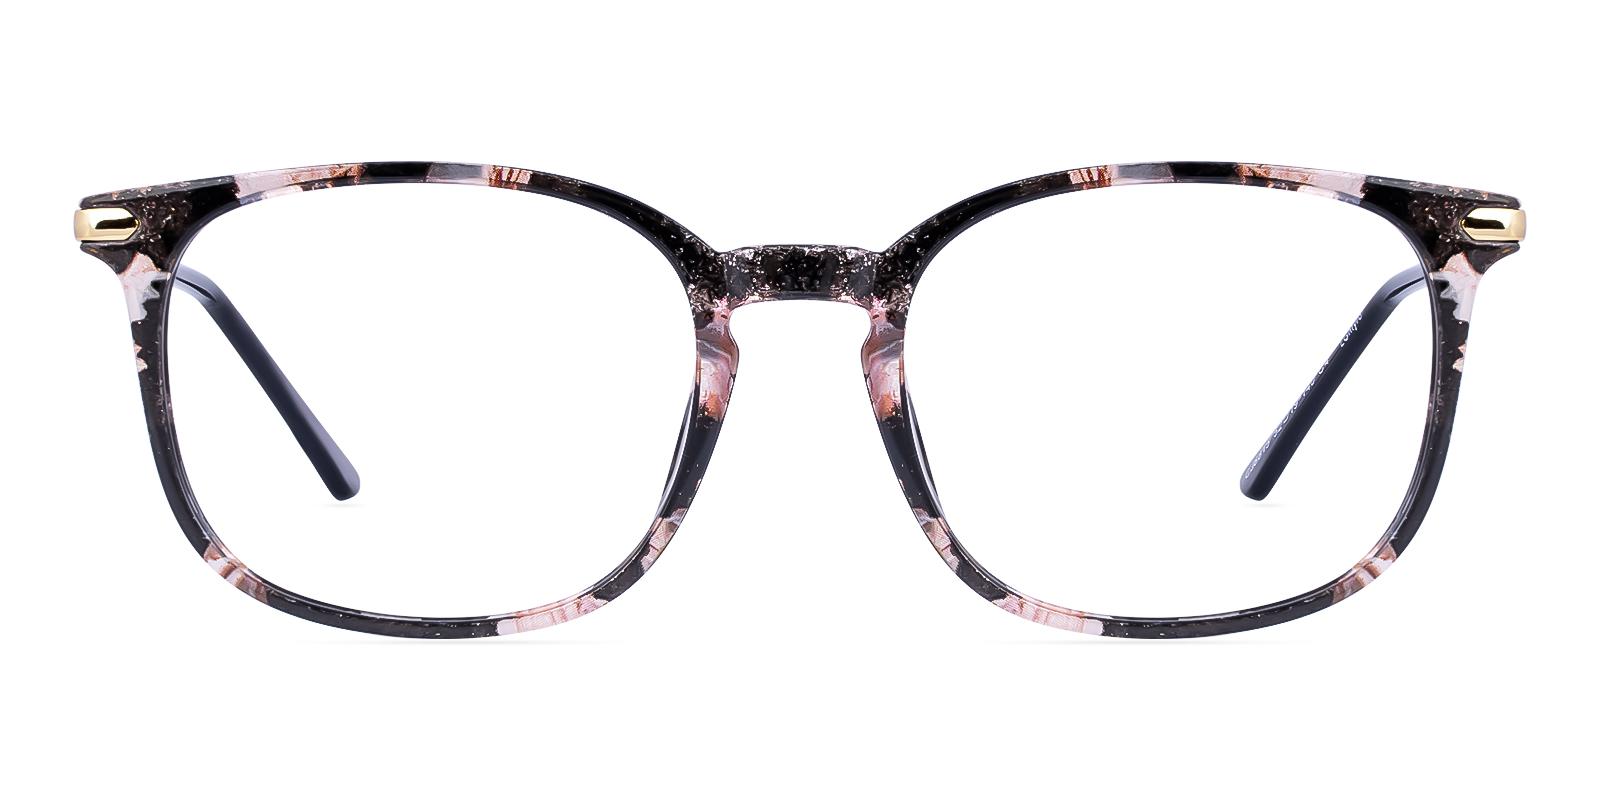 Dosast Pattern Plastic Eyeglasses , UniversalBridgeFit Frames from ABBE Glasses